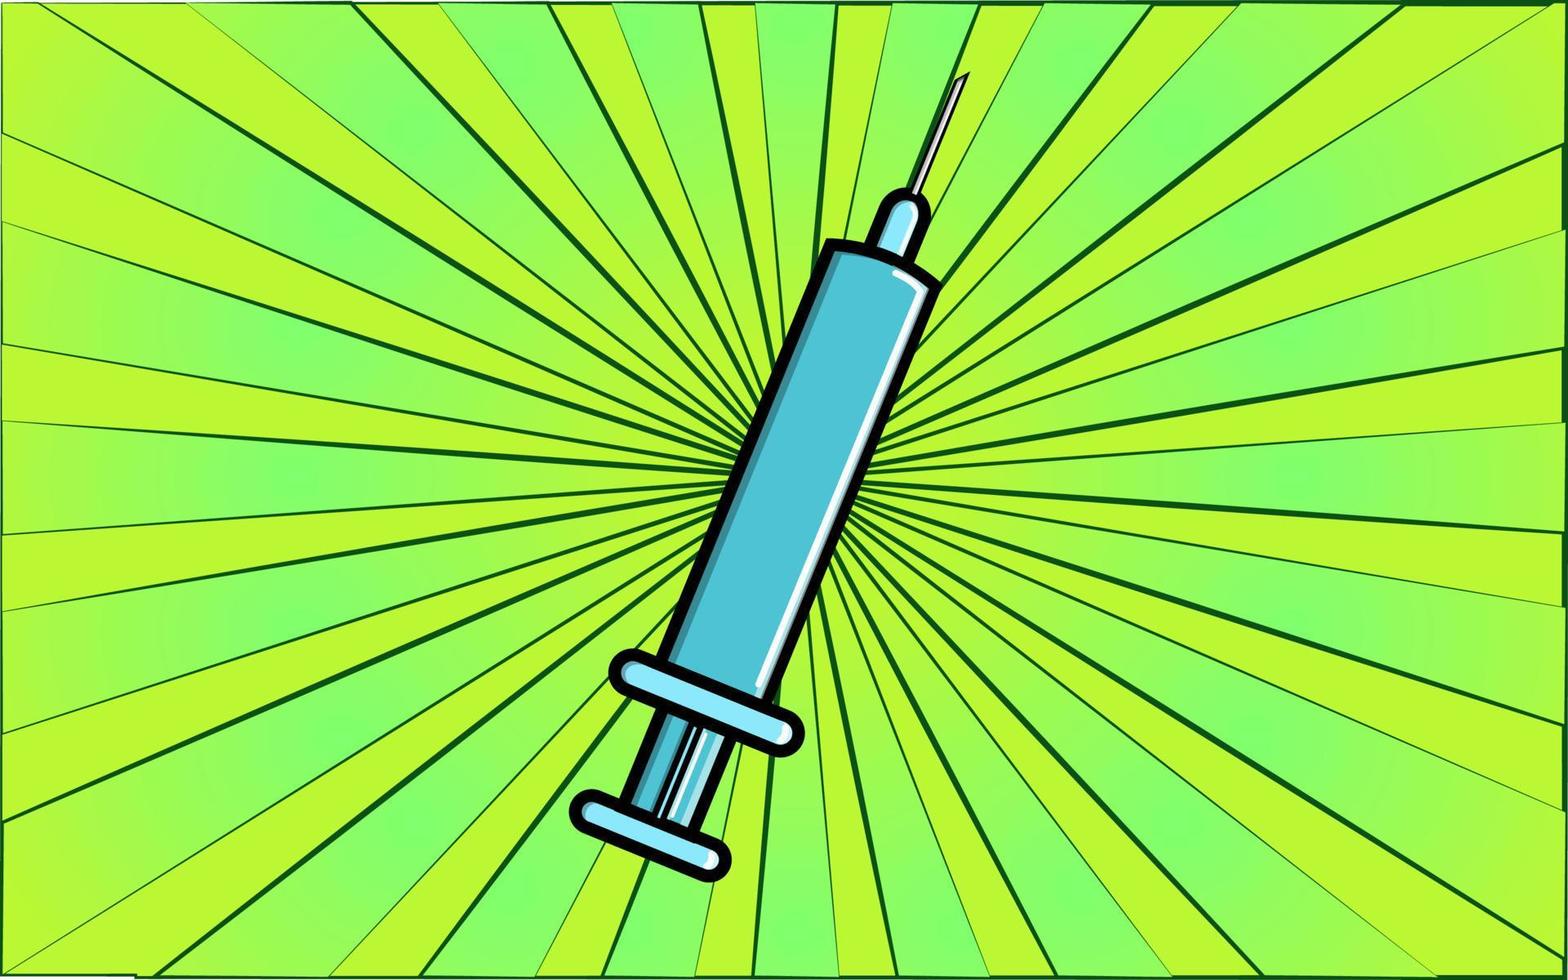 Jeringa de plástico desechable estéril curativa farmacológica médica para inyección y atención de la salud sobre un fondo de rayos verdes abstractos. ilustración vectorial vector